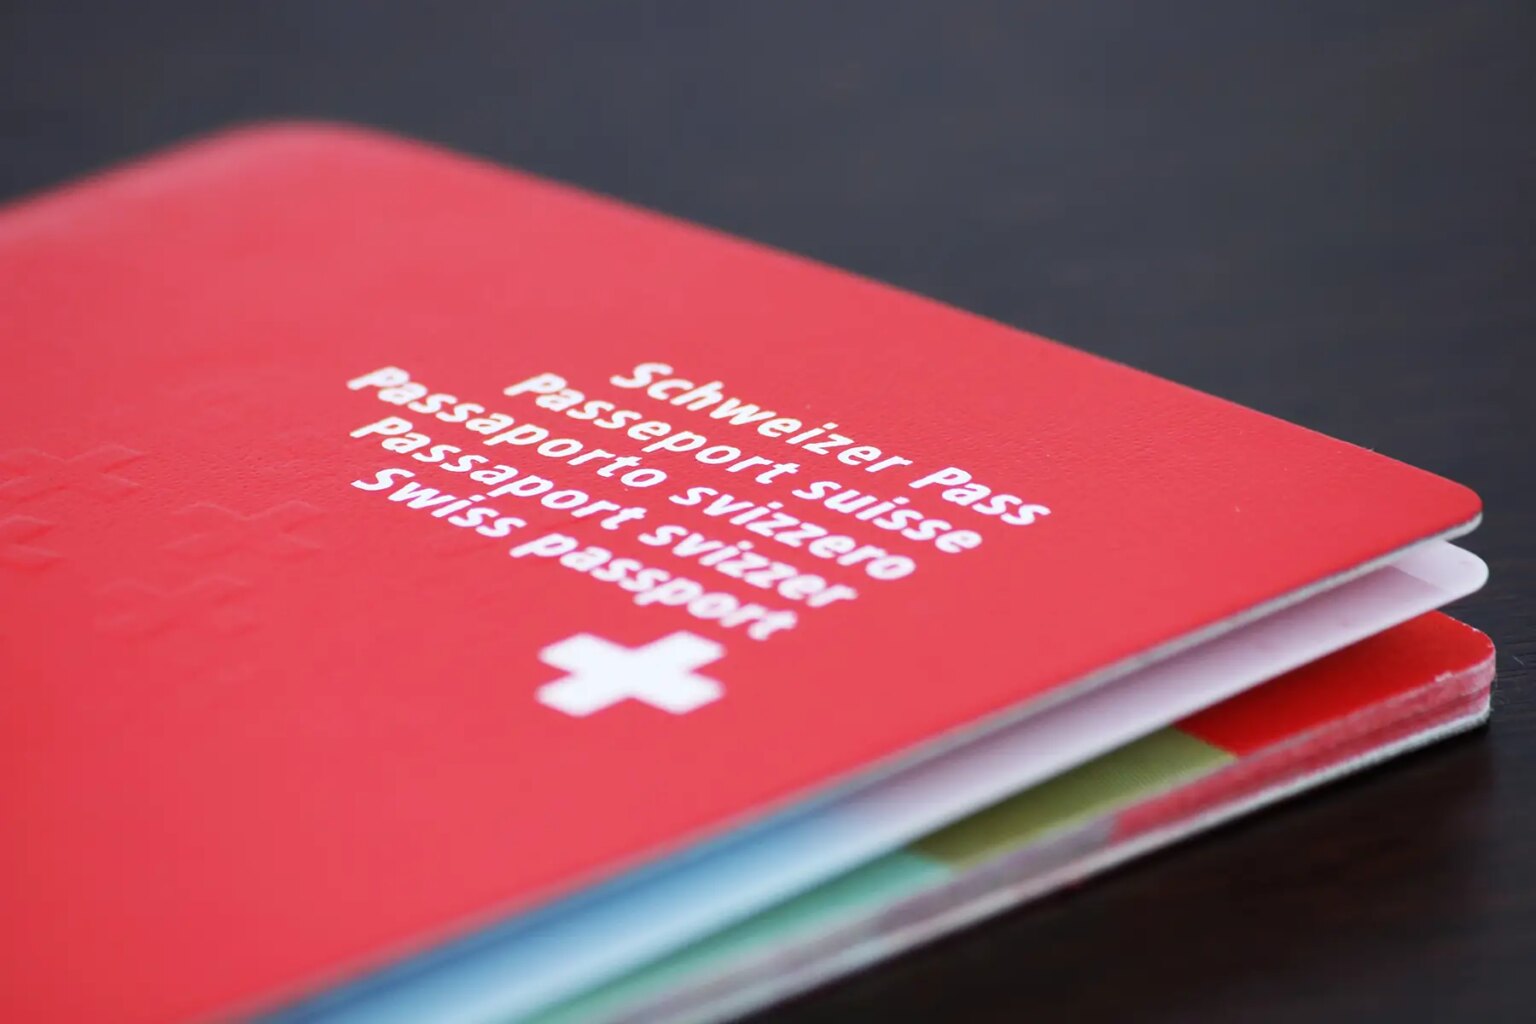 Swiss citizenship